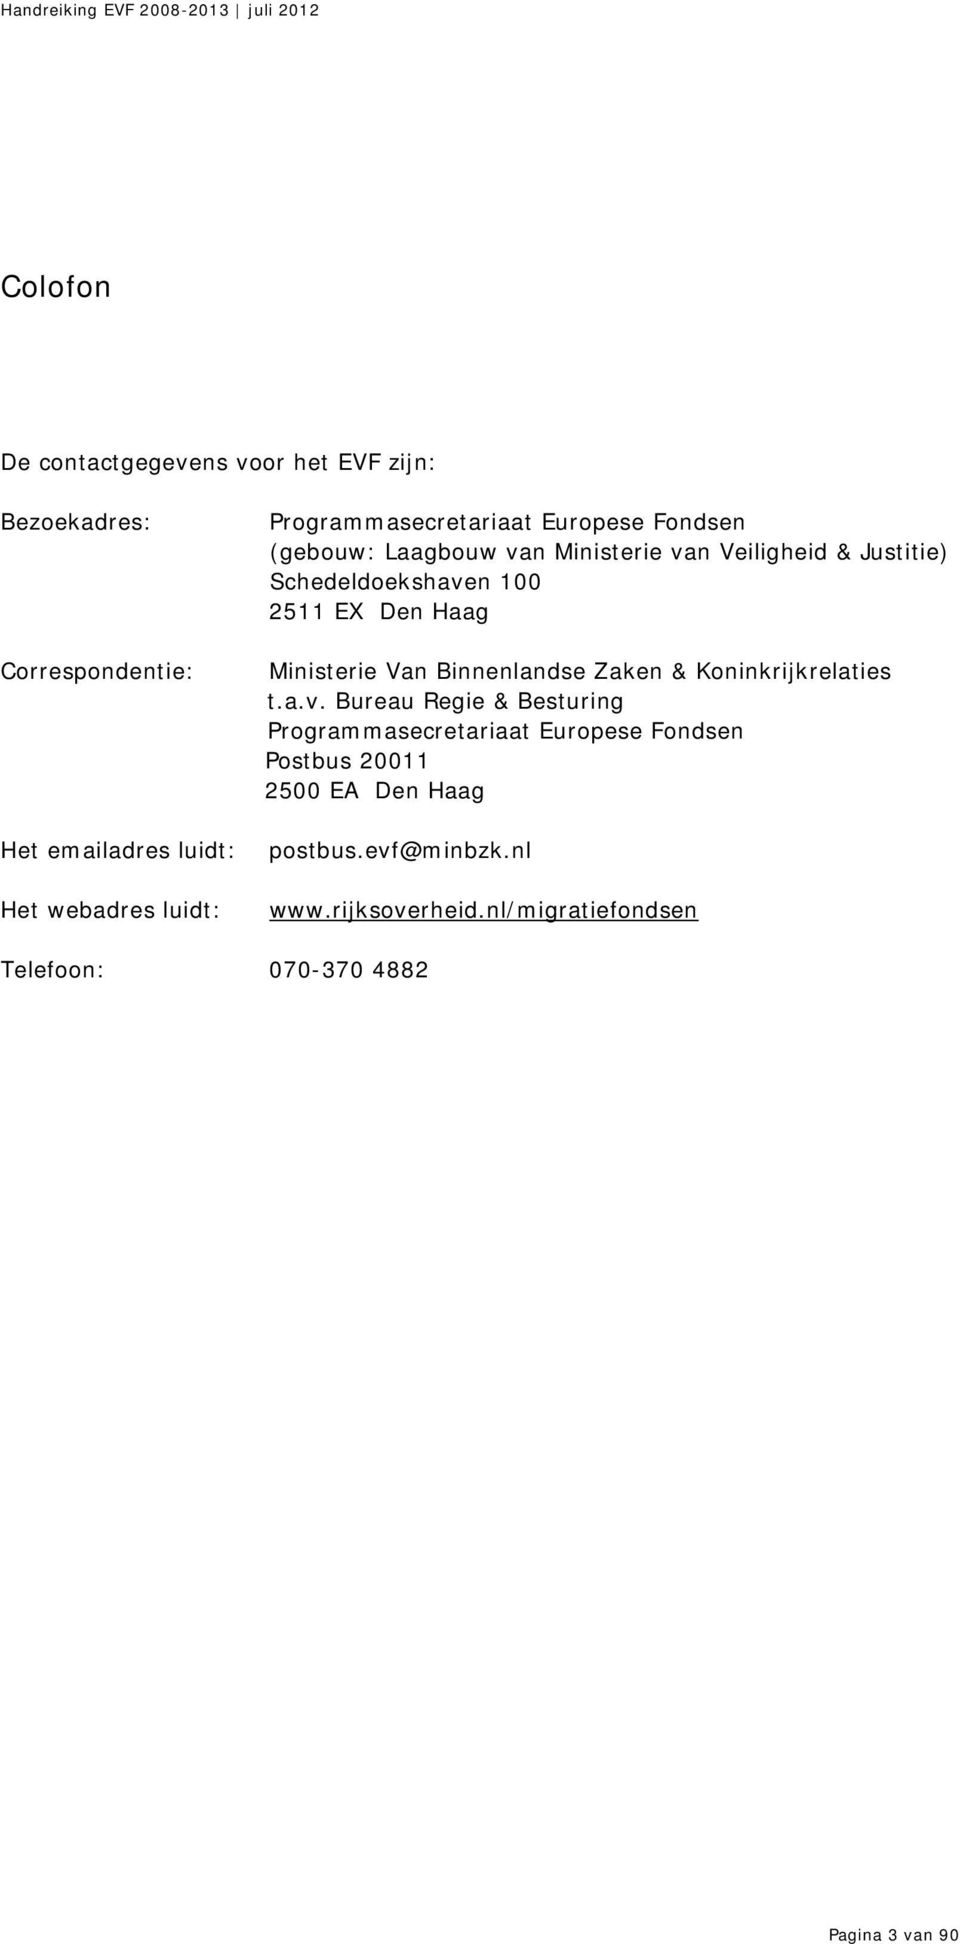 EX Den Haag Ministerie Van Binnenlandse Zaken & Koninkrijkrelaties t.a.v.